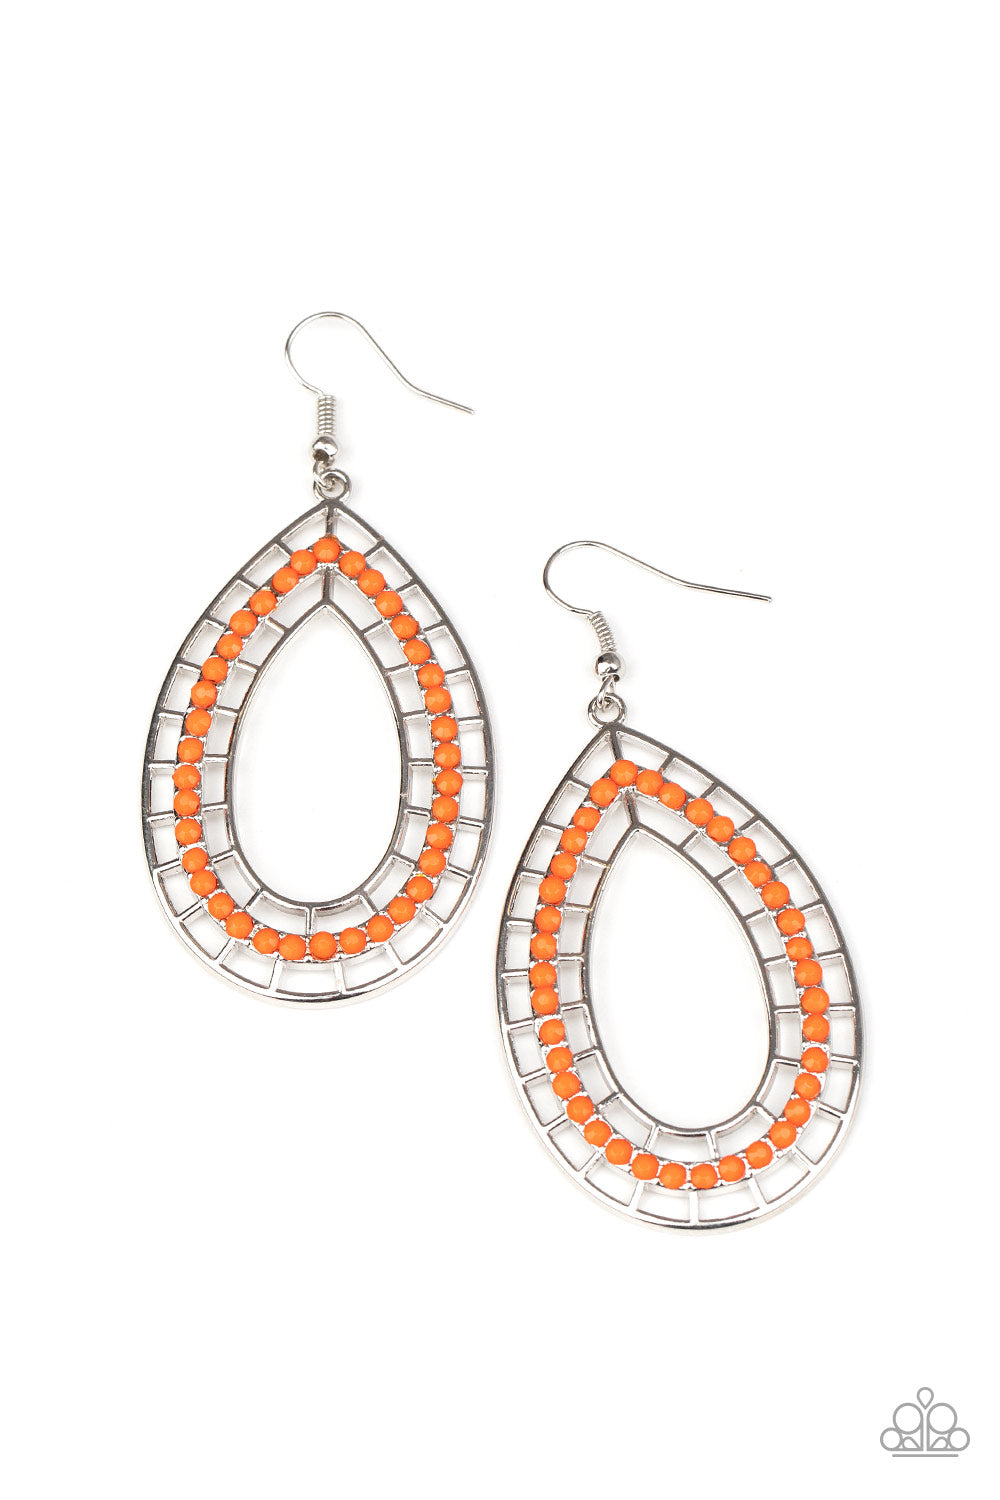 Fruity Fiesta Orange Earrings - Daria's Blings N Things